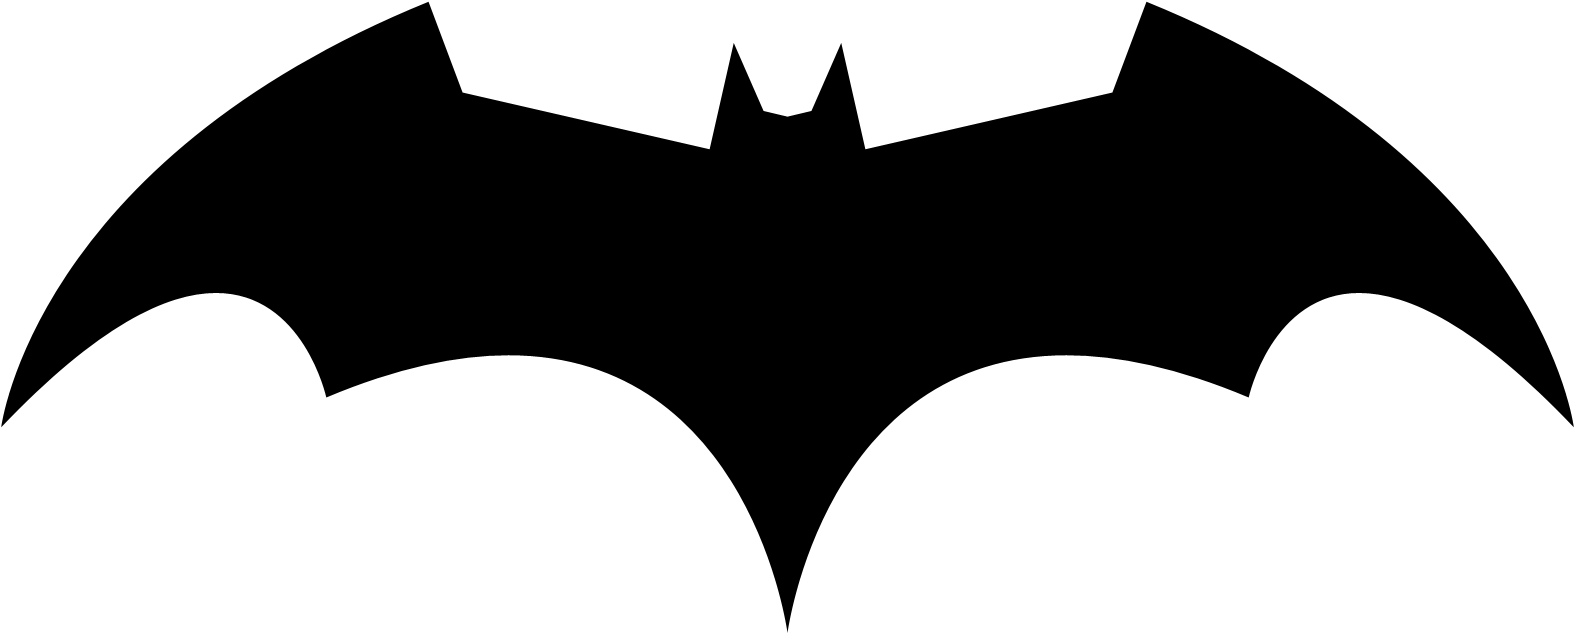 Image - Bat Man Logo (1600x656)